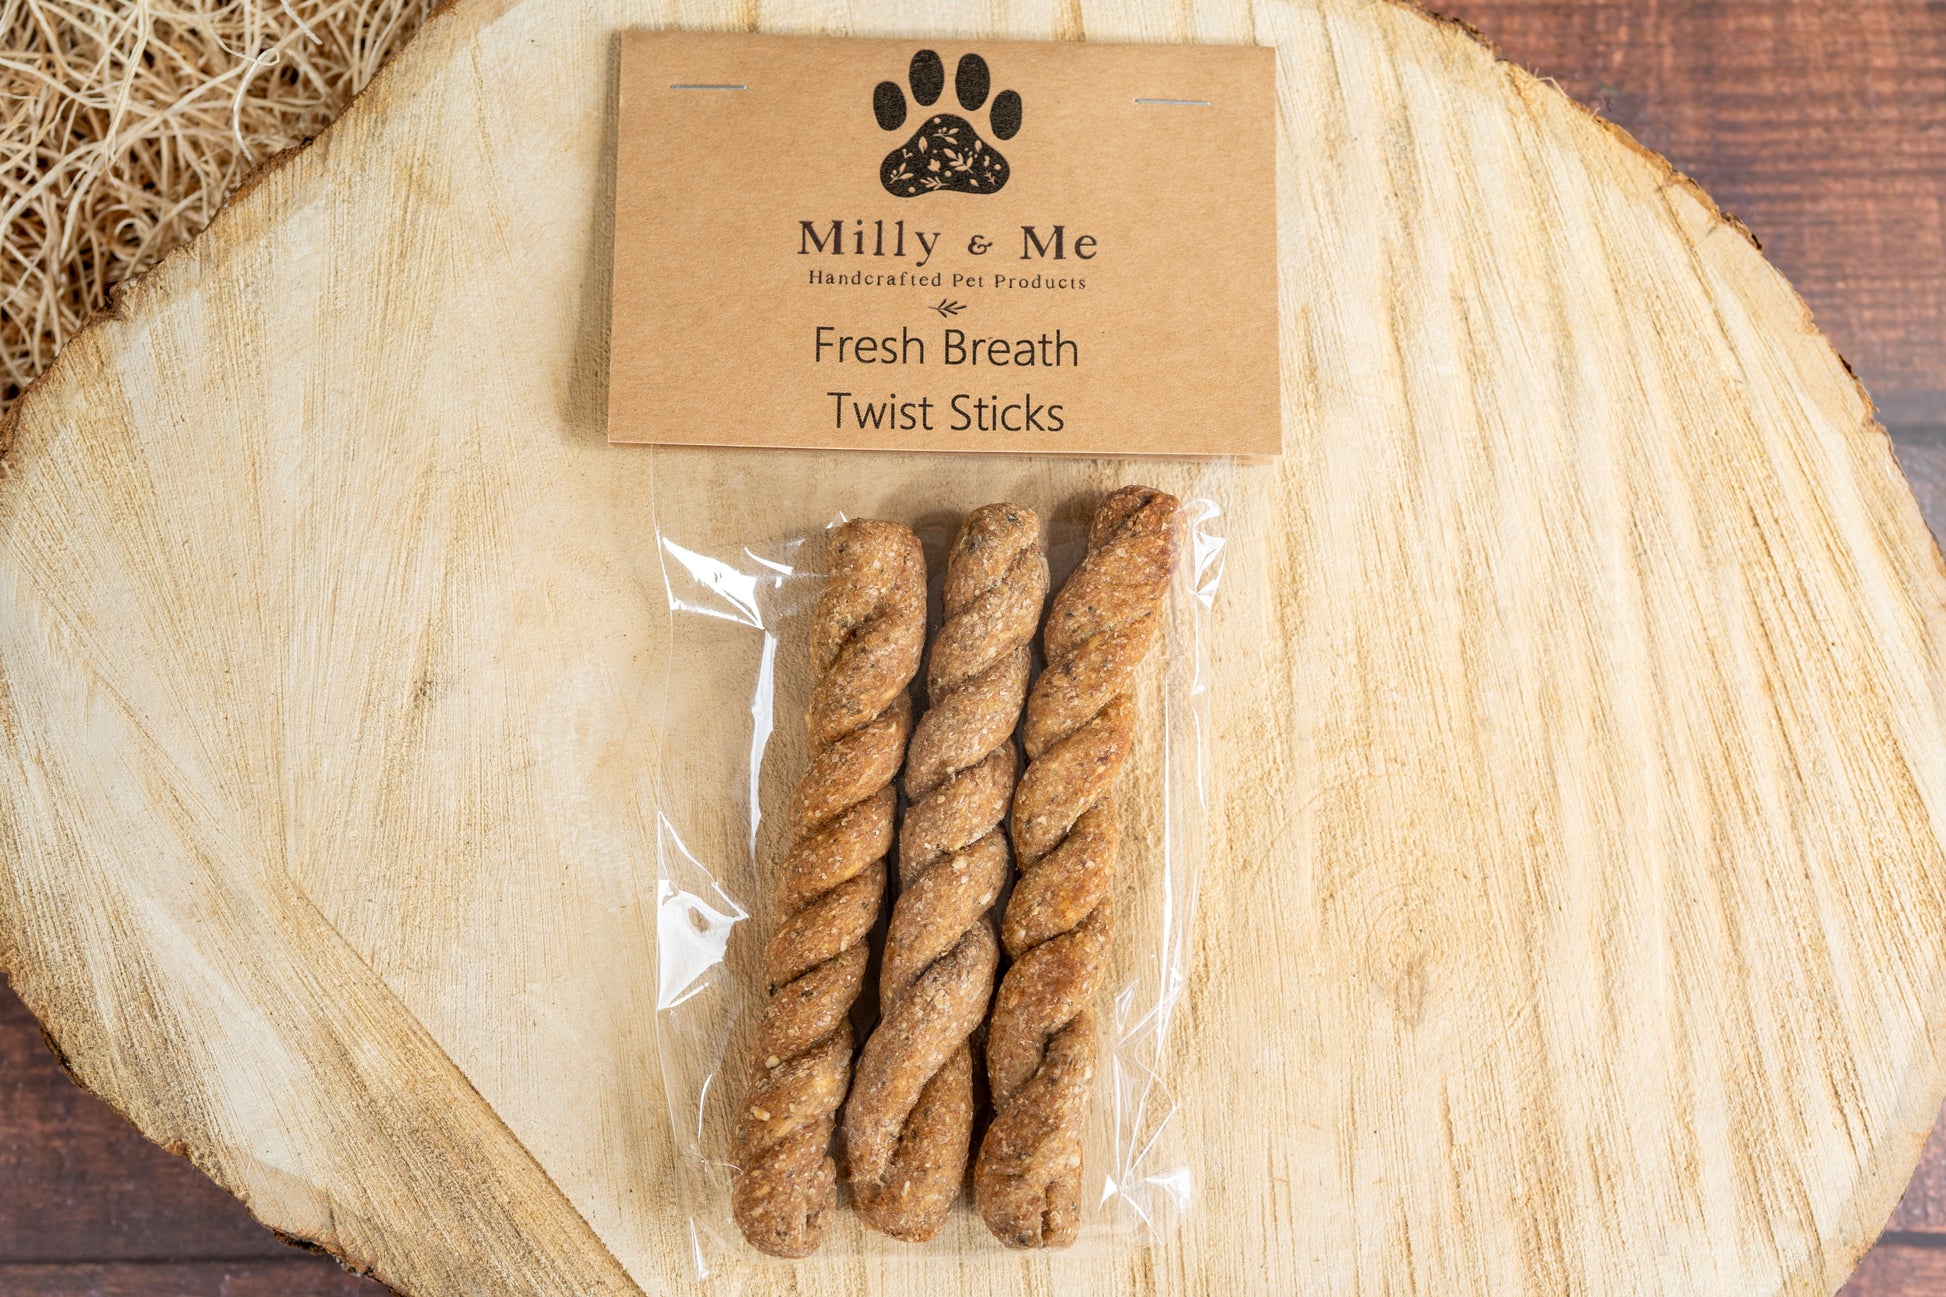 3 twisted stick fresh breath dog treats. | 3 friandises pour chien haleine fraiche sous forme de bâtonnets torsadés.